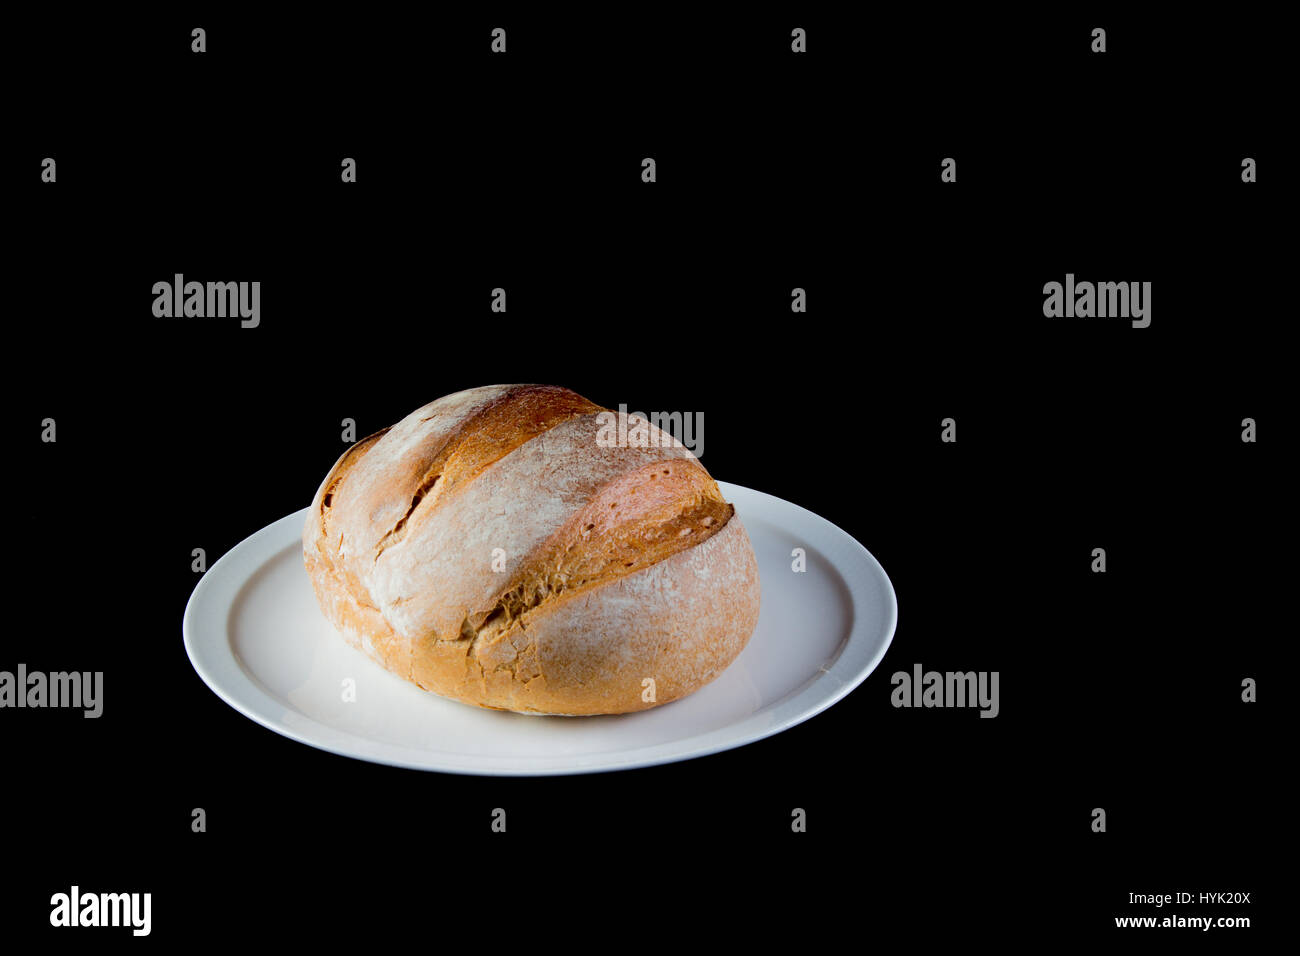 Llena de pan rústico en un manjar blanco aislado sobre fondo negro Foto de stock